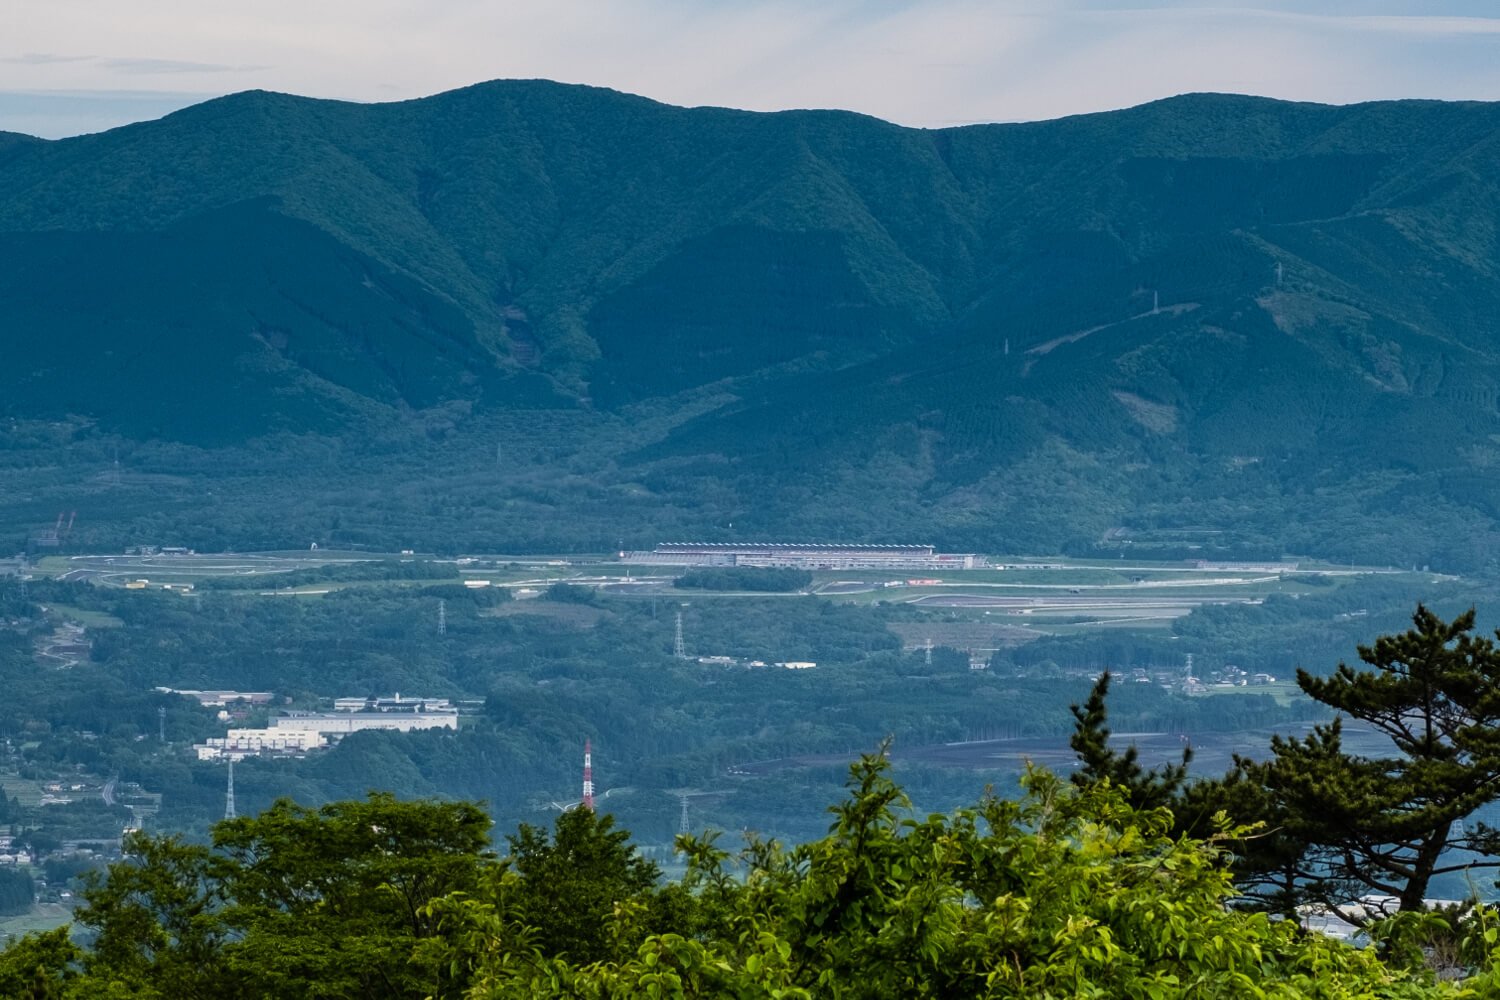 足柄峠からトレイルを遠望。稜線手前には日本で初めてF1GPが開催された富士スピードウェイが見える。